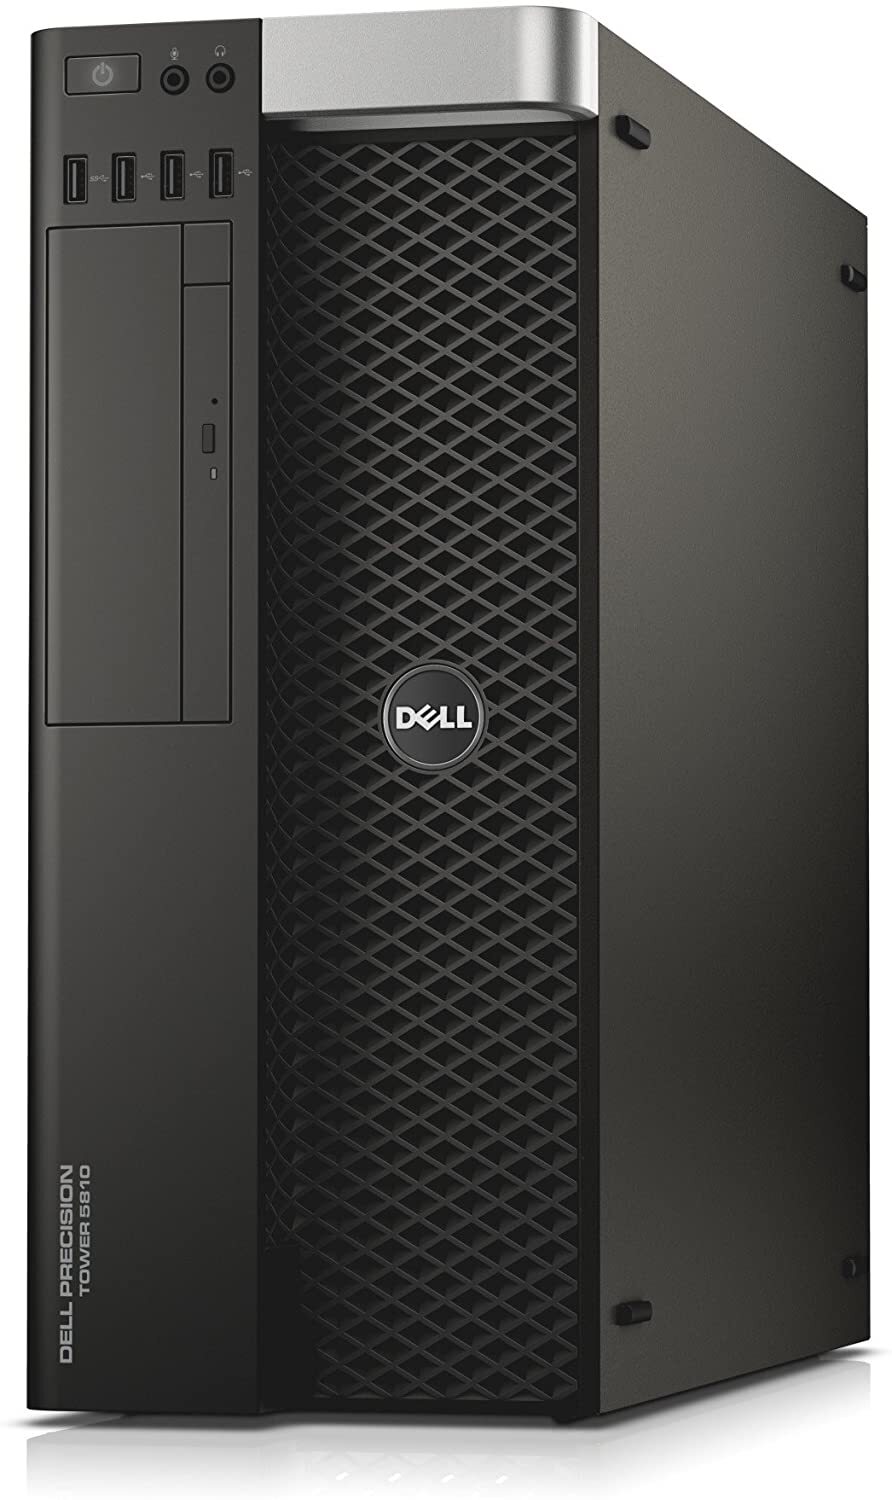 Dell Precision Tower 5810 Intel Xeon E5-1650 V3 3.50GHz 8GB RAM 240GB SSD Win 10